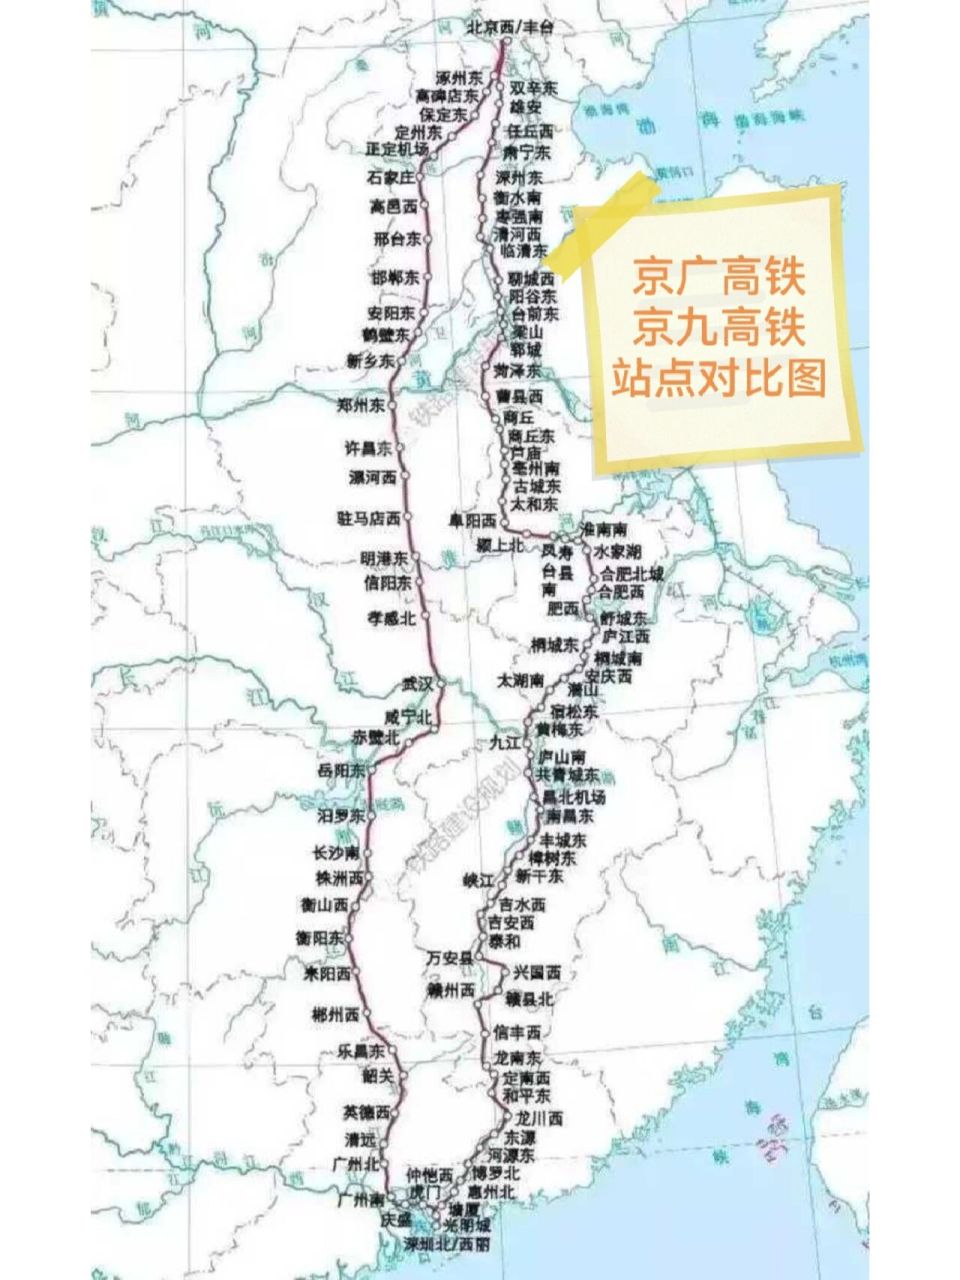 京九铁路广东线路图图片